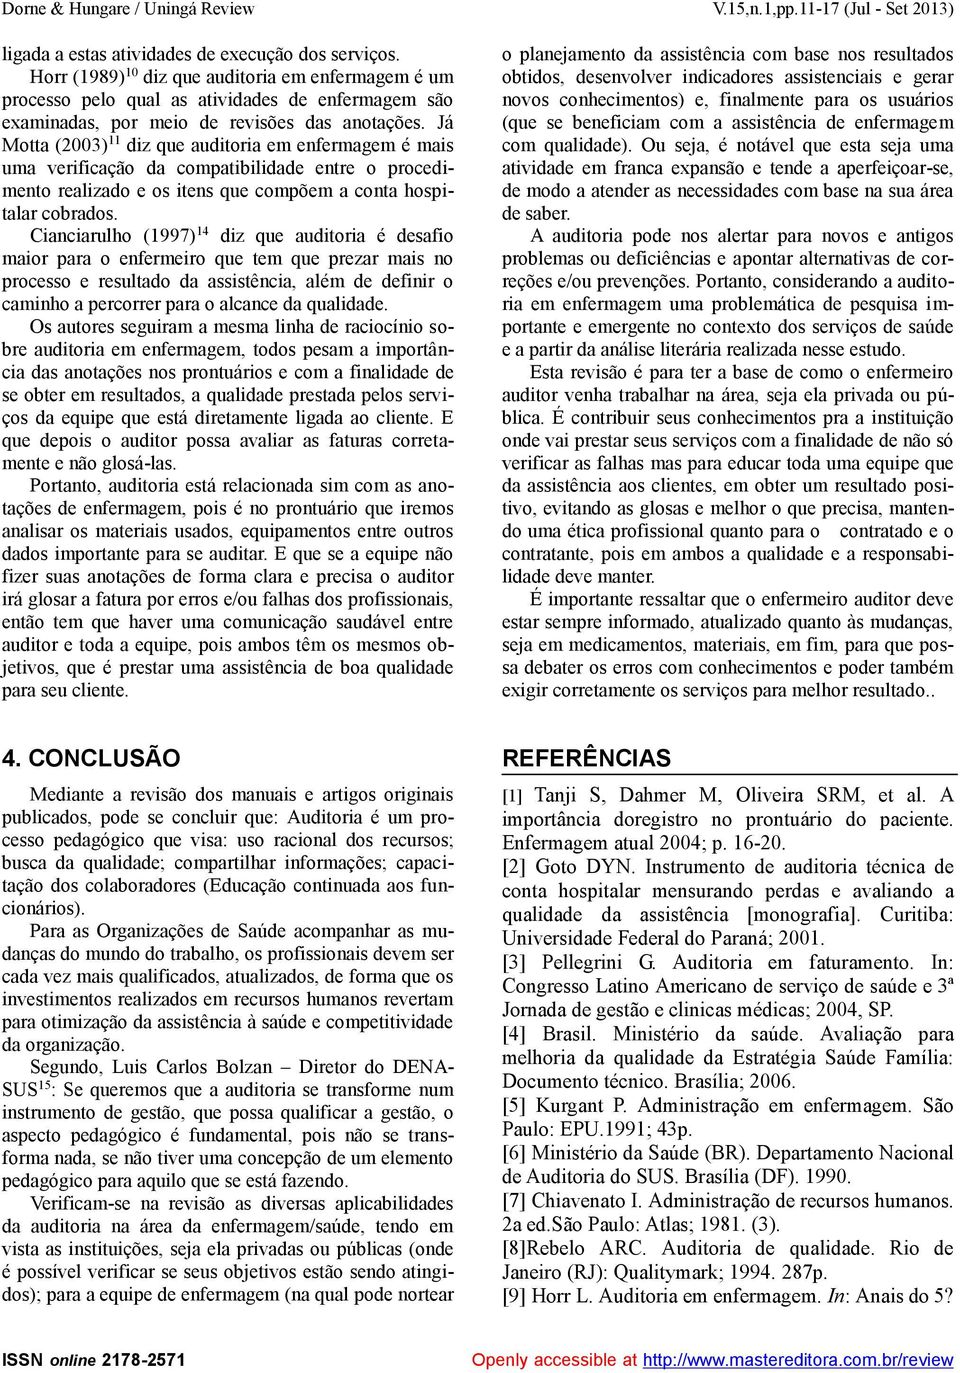 Já Motta (2003) 11 diz que auditoria em enfermagem é mais uma verificação da compatibilidade entre o procedimento realizado e os itens que compõem a conta hospitalar cobrados.